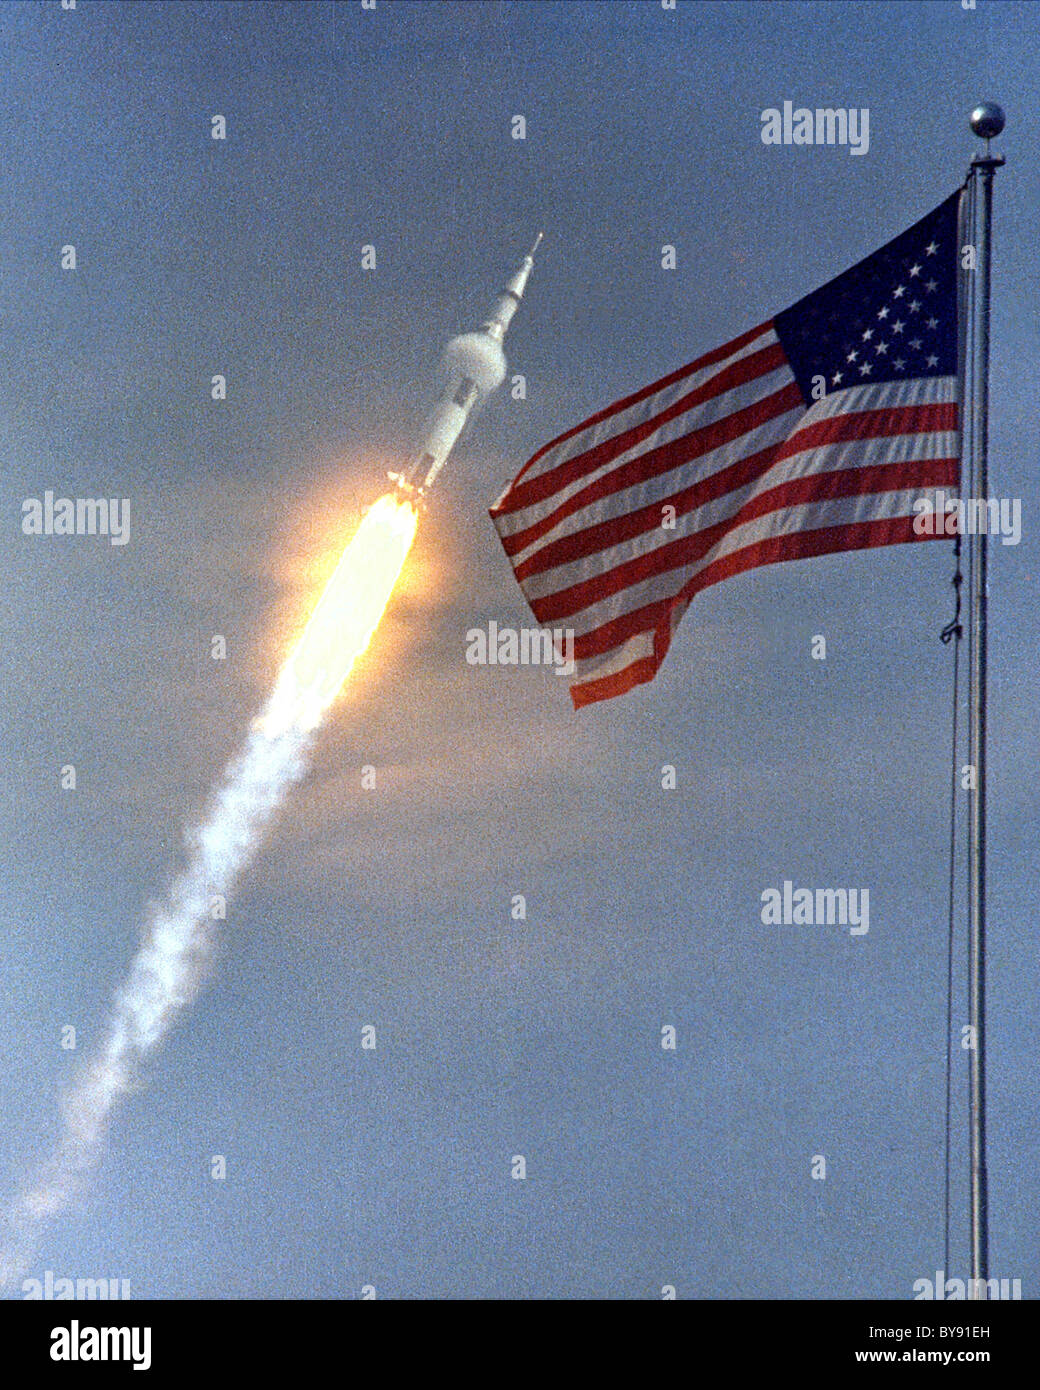 Apollo 11 die erste Mondlandung Mission startet vom Kennedy Space Center Launch Complex 39A. Stockfoto